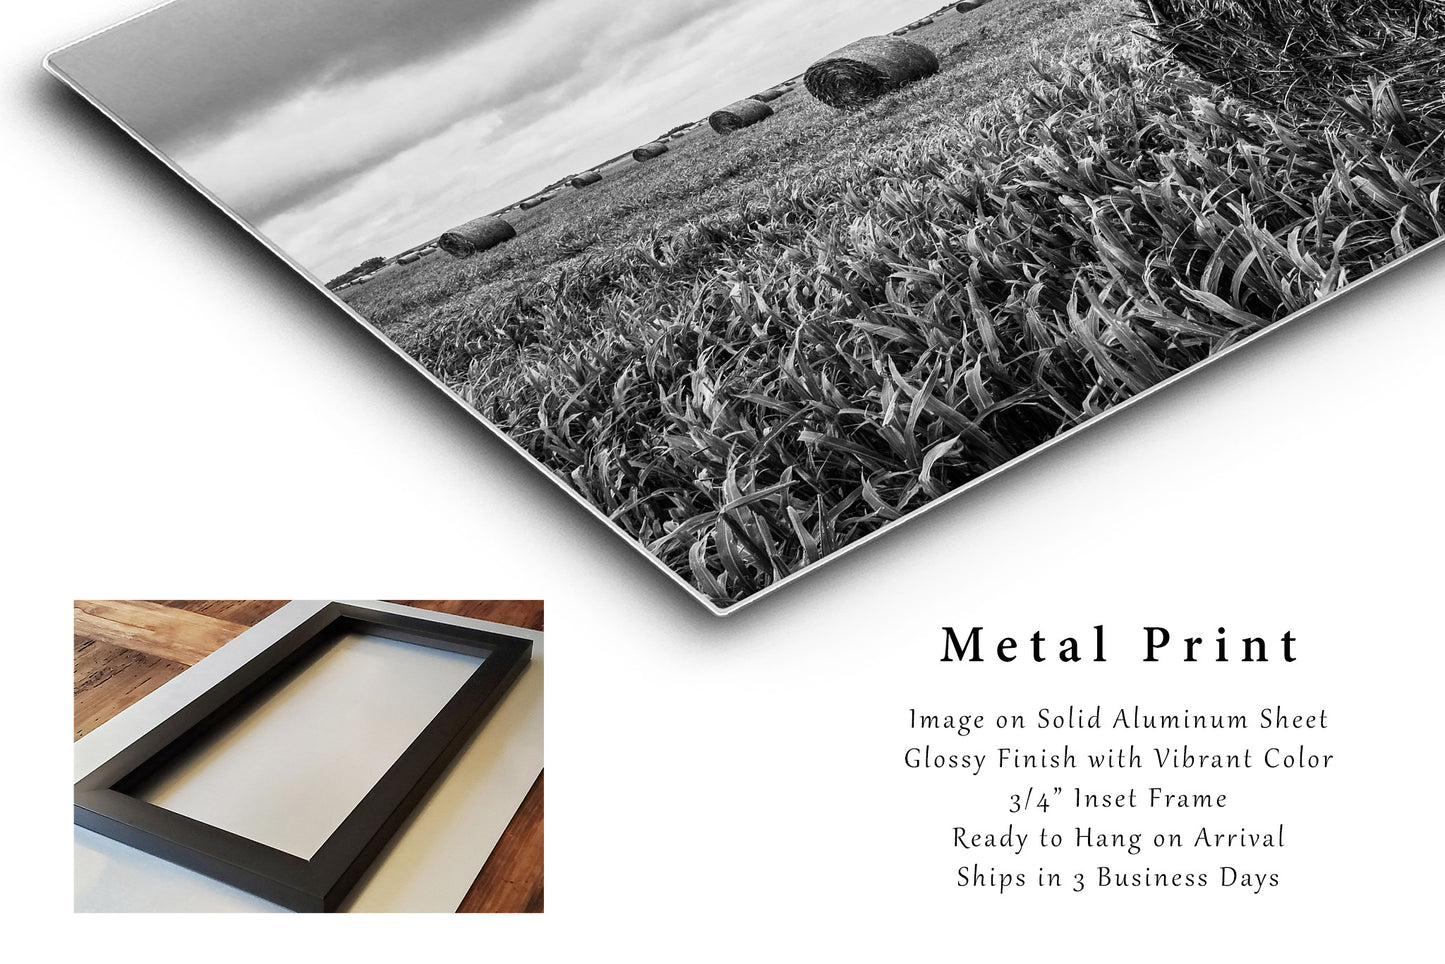 Metal Print | Round Hay Bale Photo | Kansas Artwork | Nostalgic Farm Wall Art | Black and White Photography | Farmhouse Decor